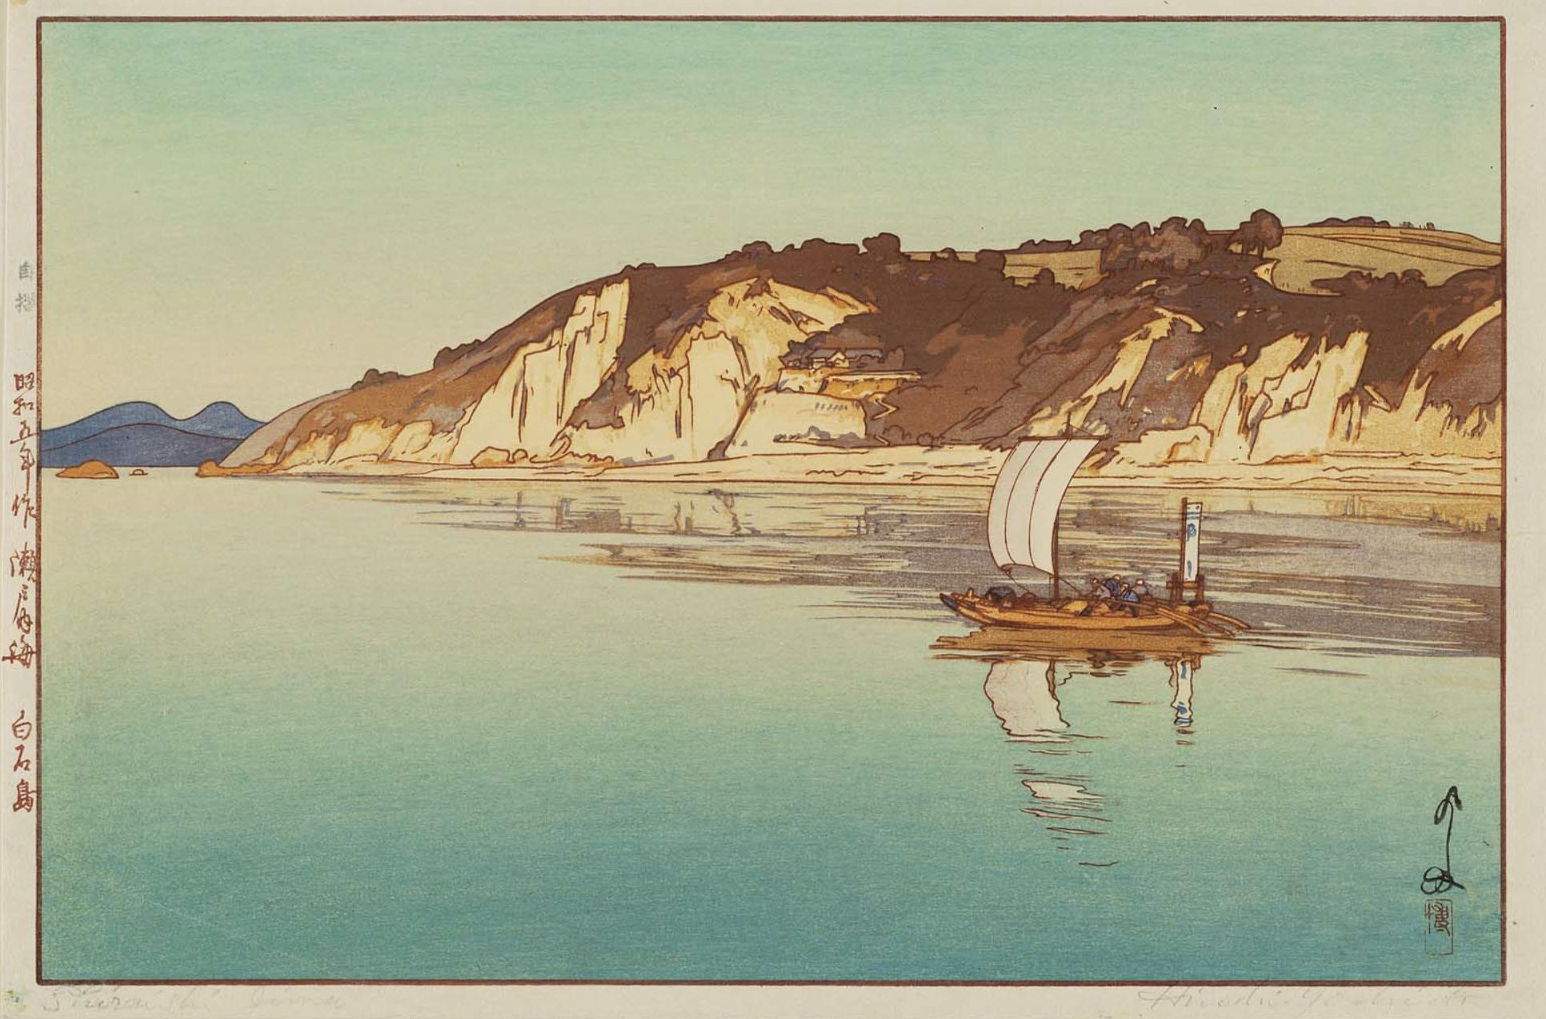 Hiroshi Yoshida “Shiraishi Island” 1930 woodblock print